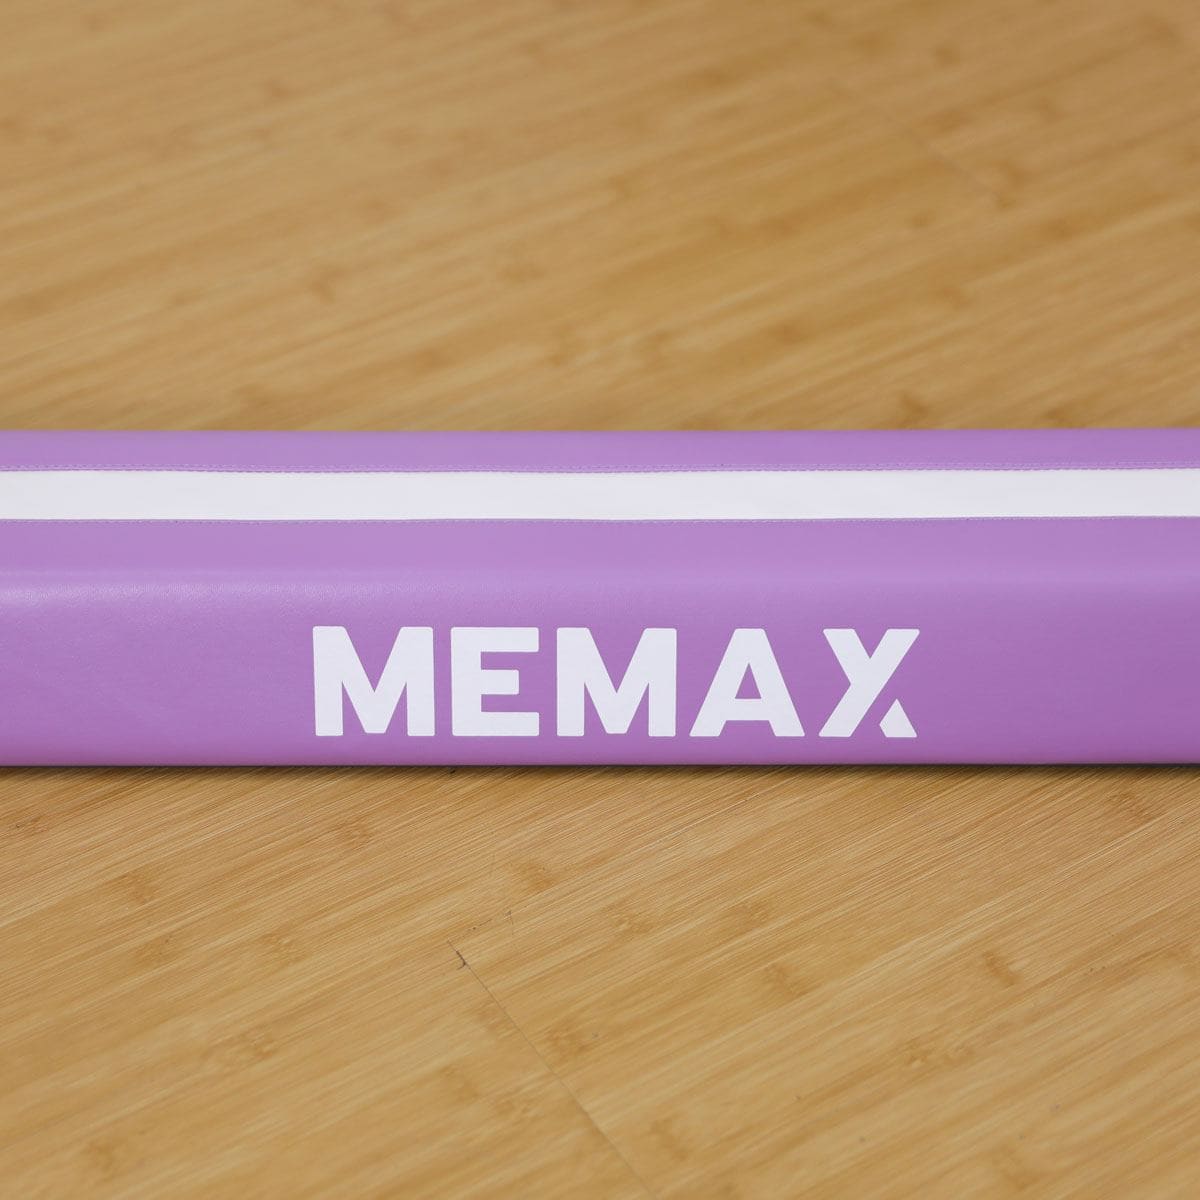 MEMAX Folding Gymnastics Balance Beam with Guide Line 3.5M